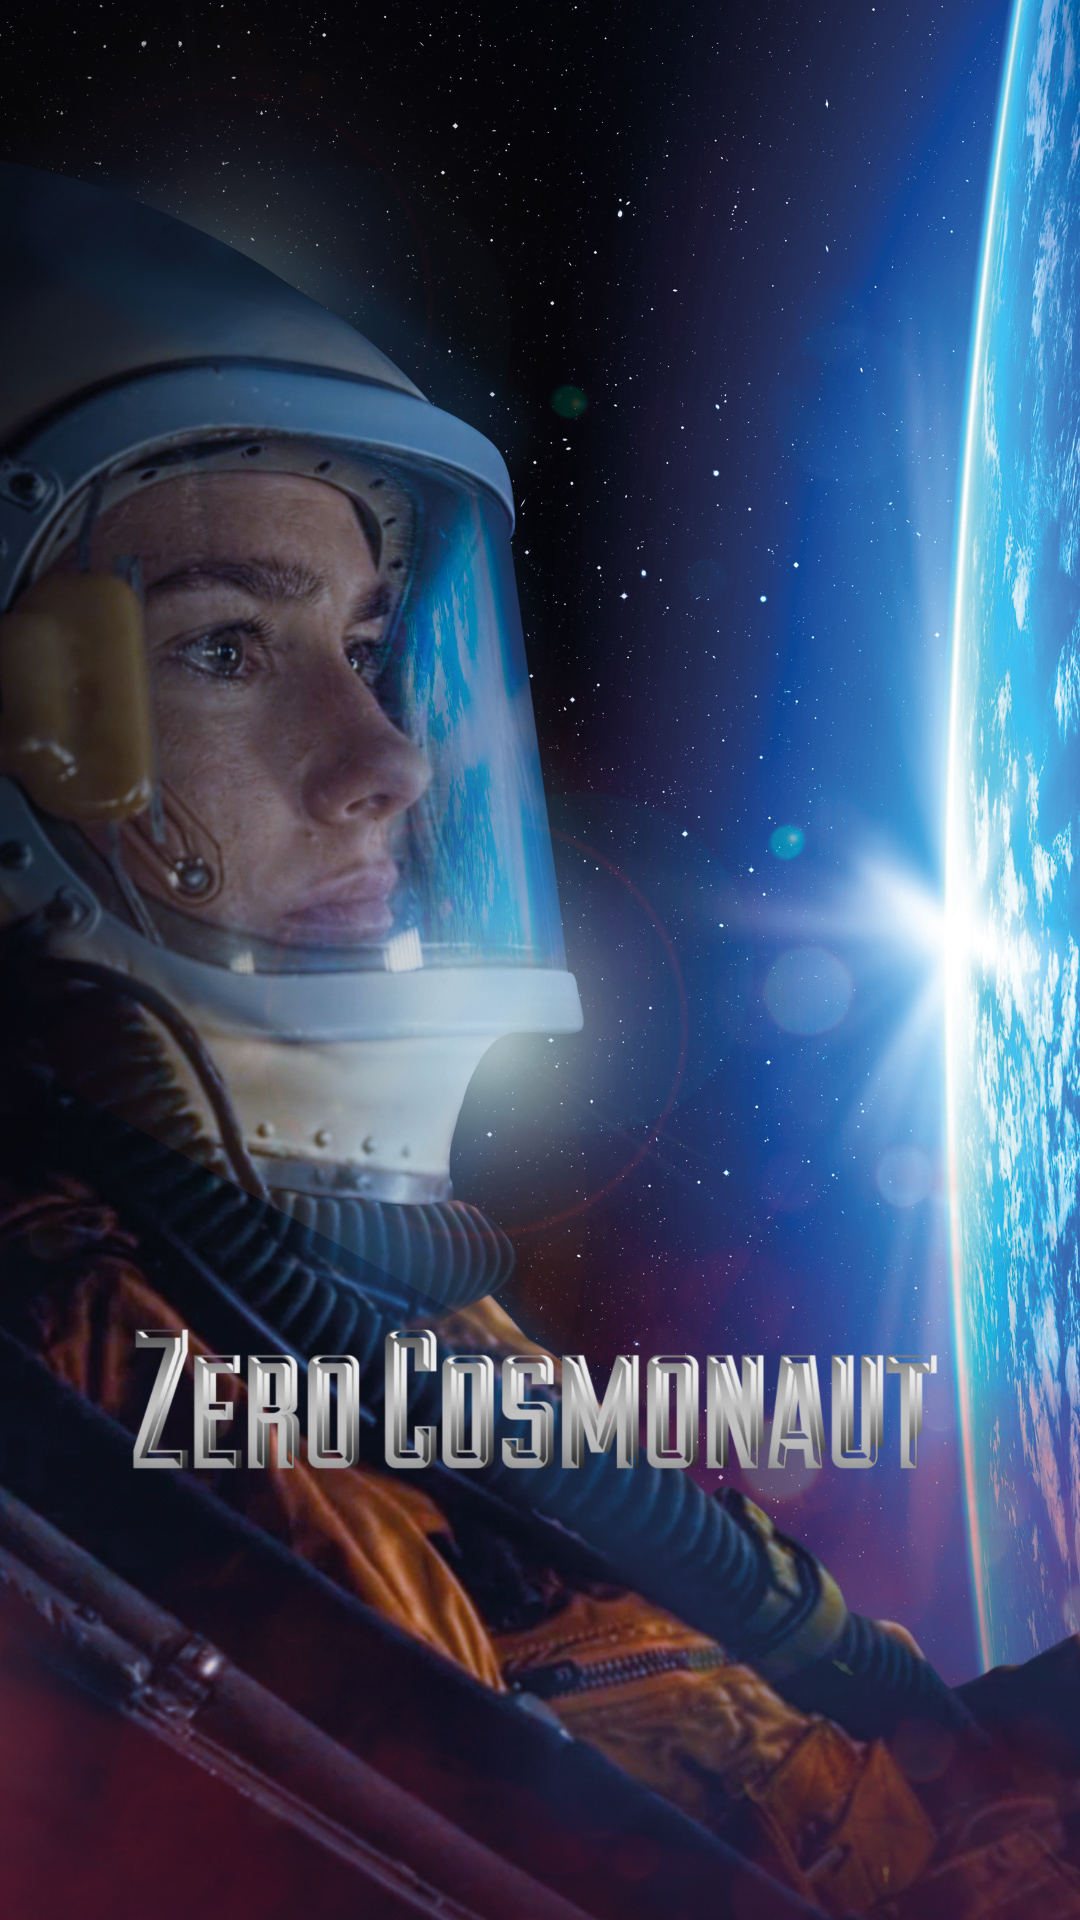 The Zero Astronaut | Trailer | Premiere on April 24th